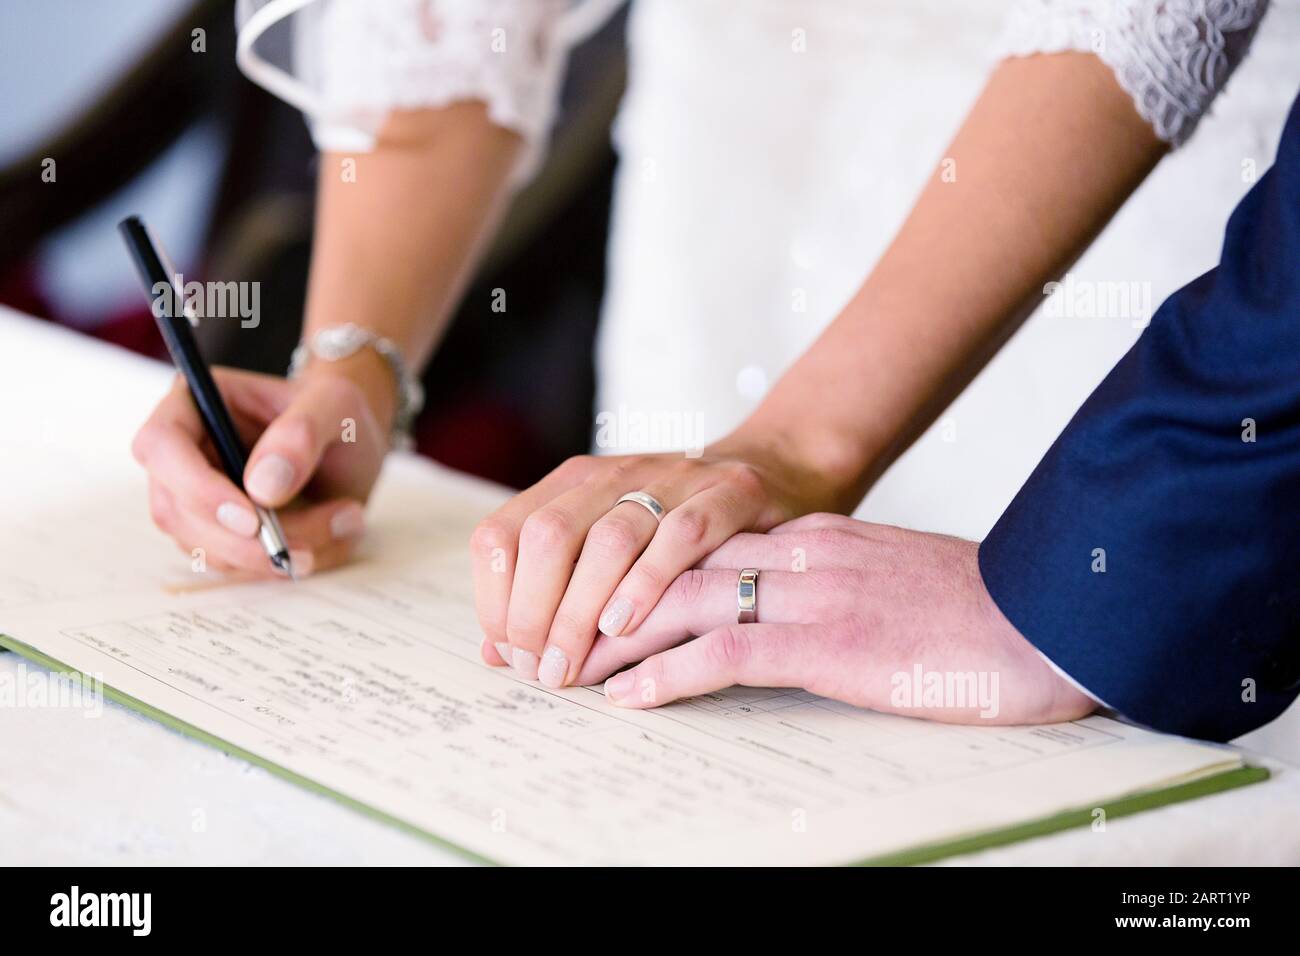 Una novia y un novio firman un libro de registro de matrimonio de la iglesia después de su boda de la iglesia. Ambos anillos de boda son claramente visibles Foto de stock